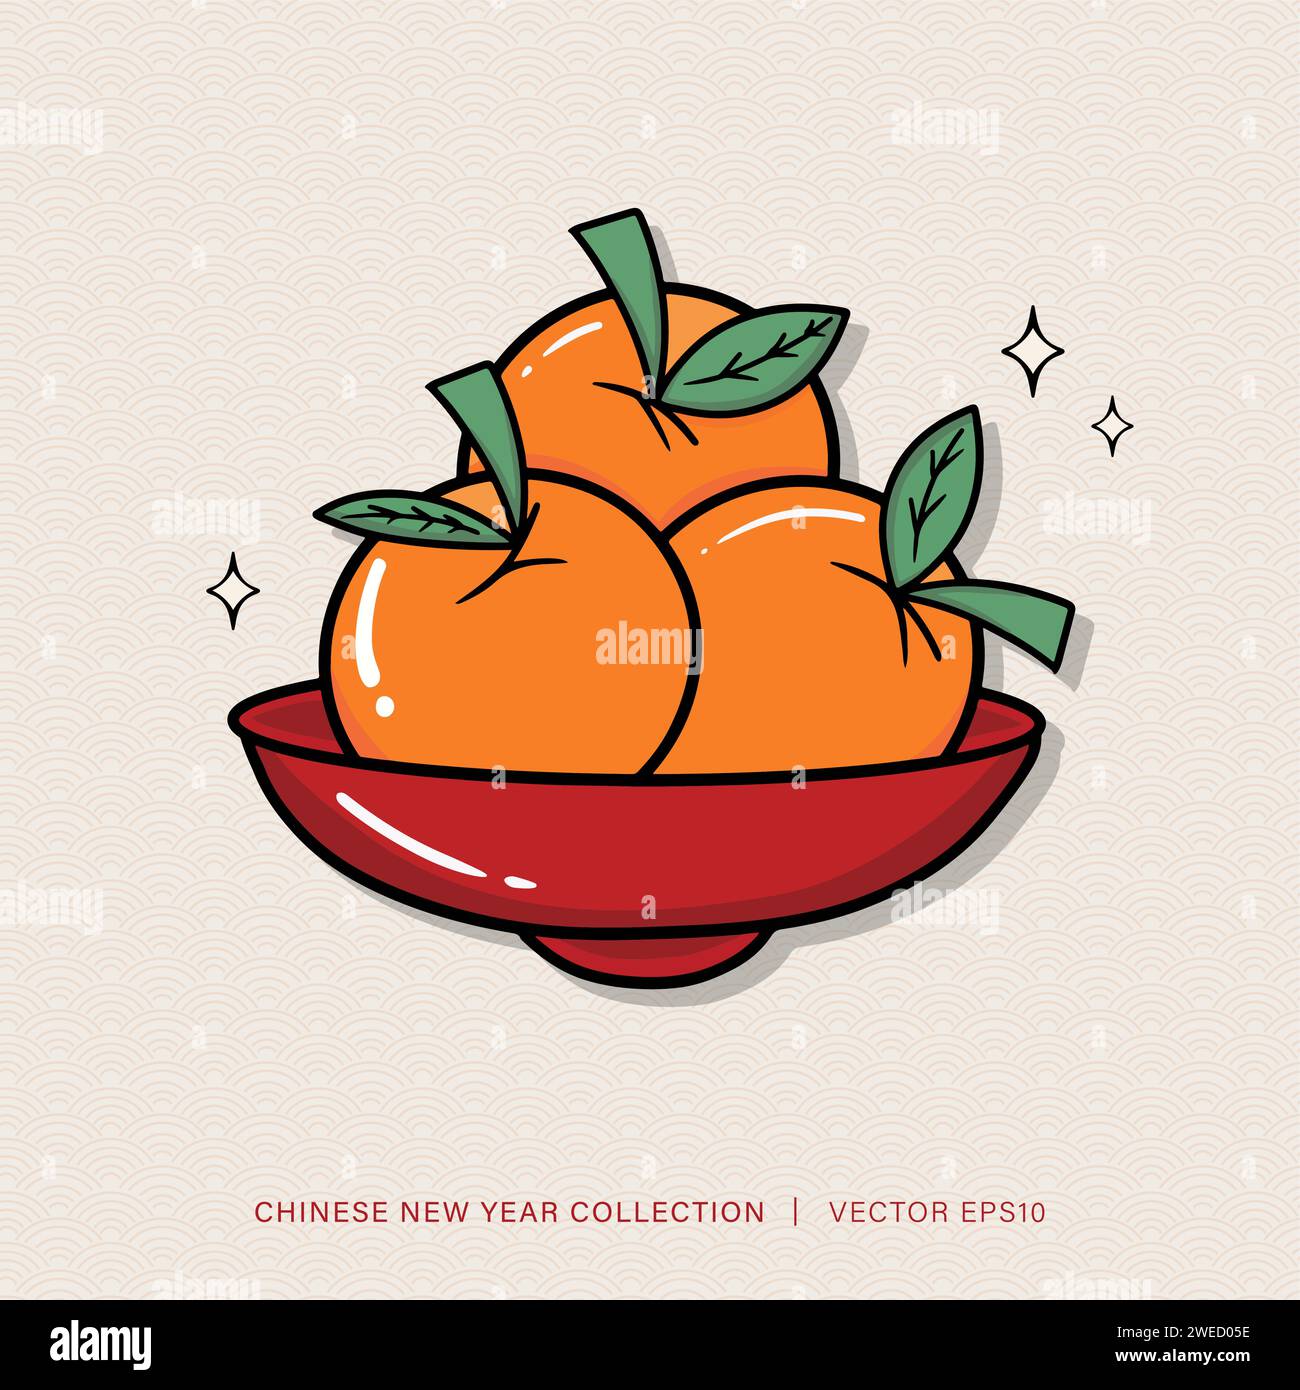 Das chinesische Neujahrsfest Mandarinen-Orangen-Zitrusfrüchte verspricht Glück, Wohlstand und ein langes Leben Stock Vektor